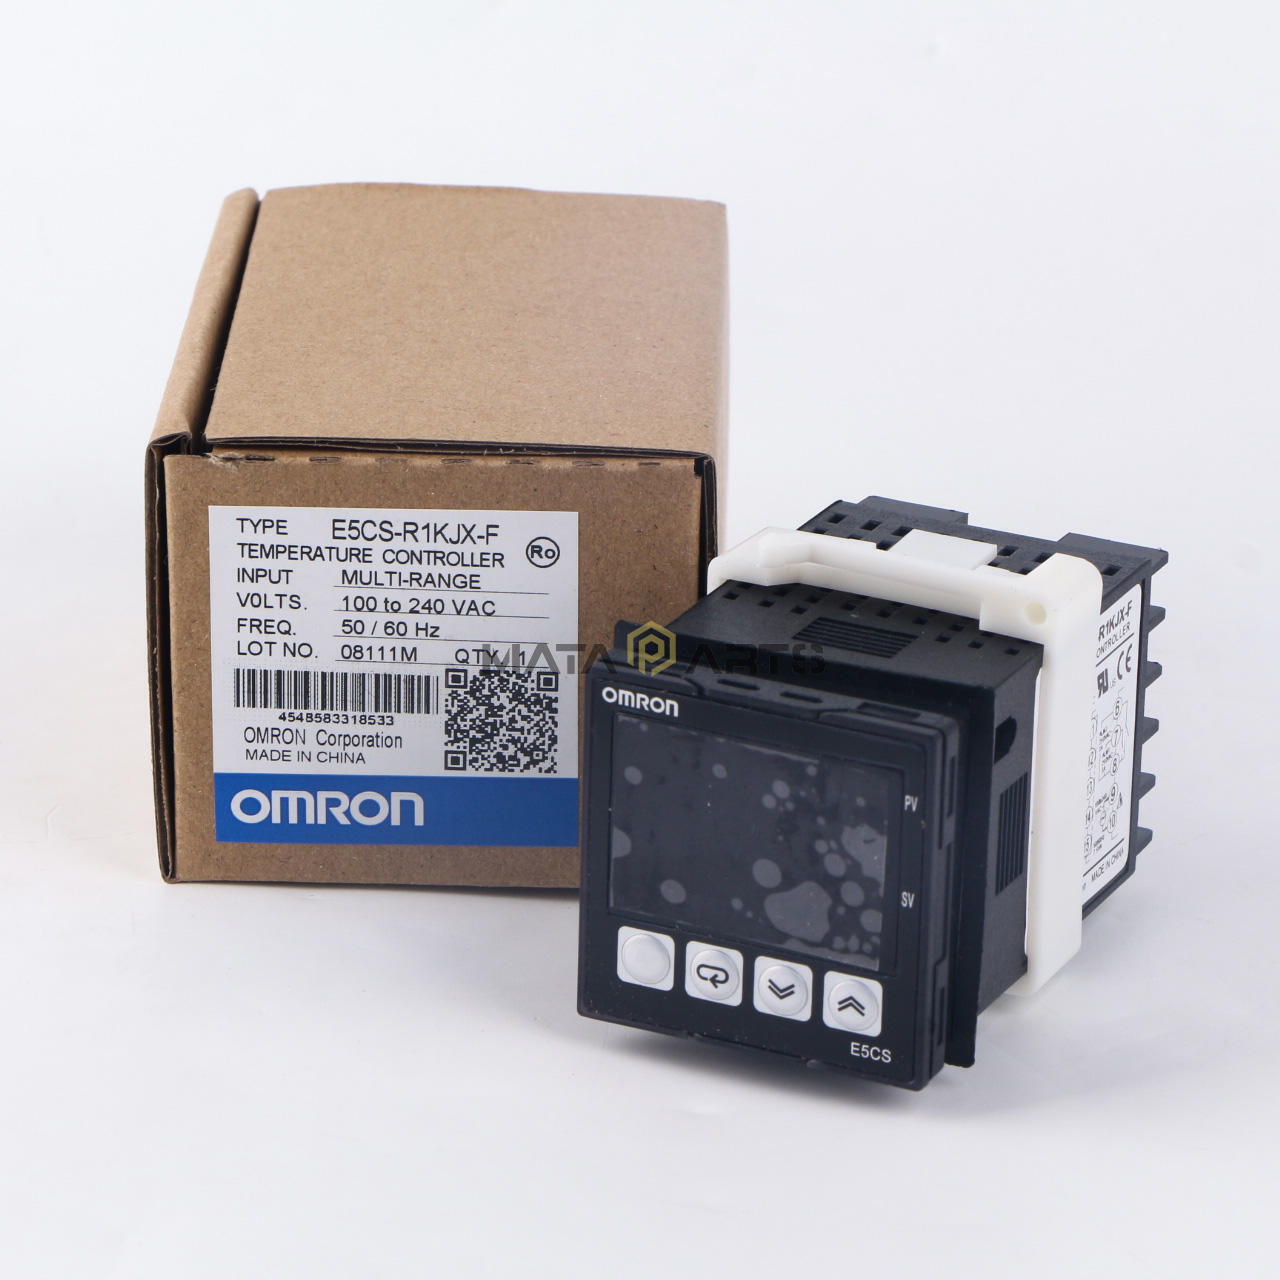 1PC New for Omron E5CS-R1KJX-F Temperature Controller 100-240VAC